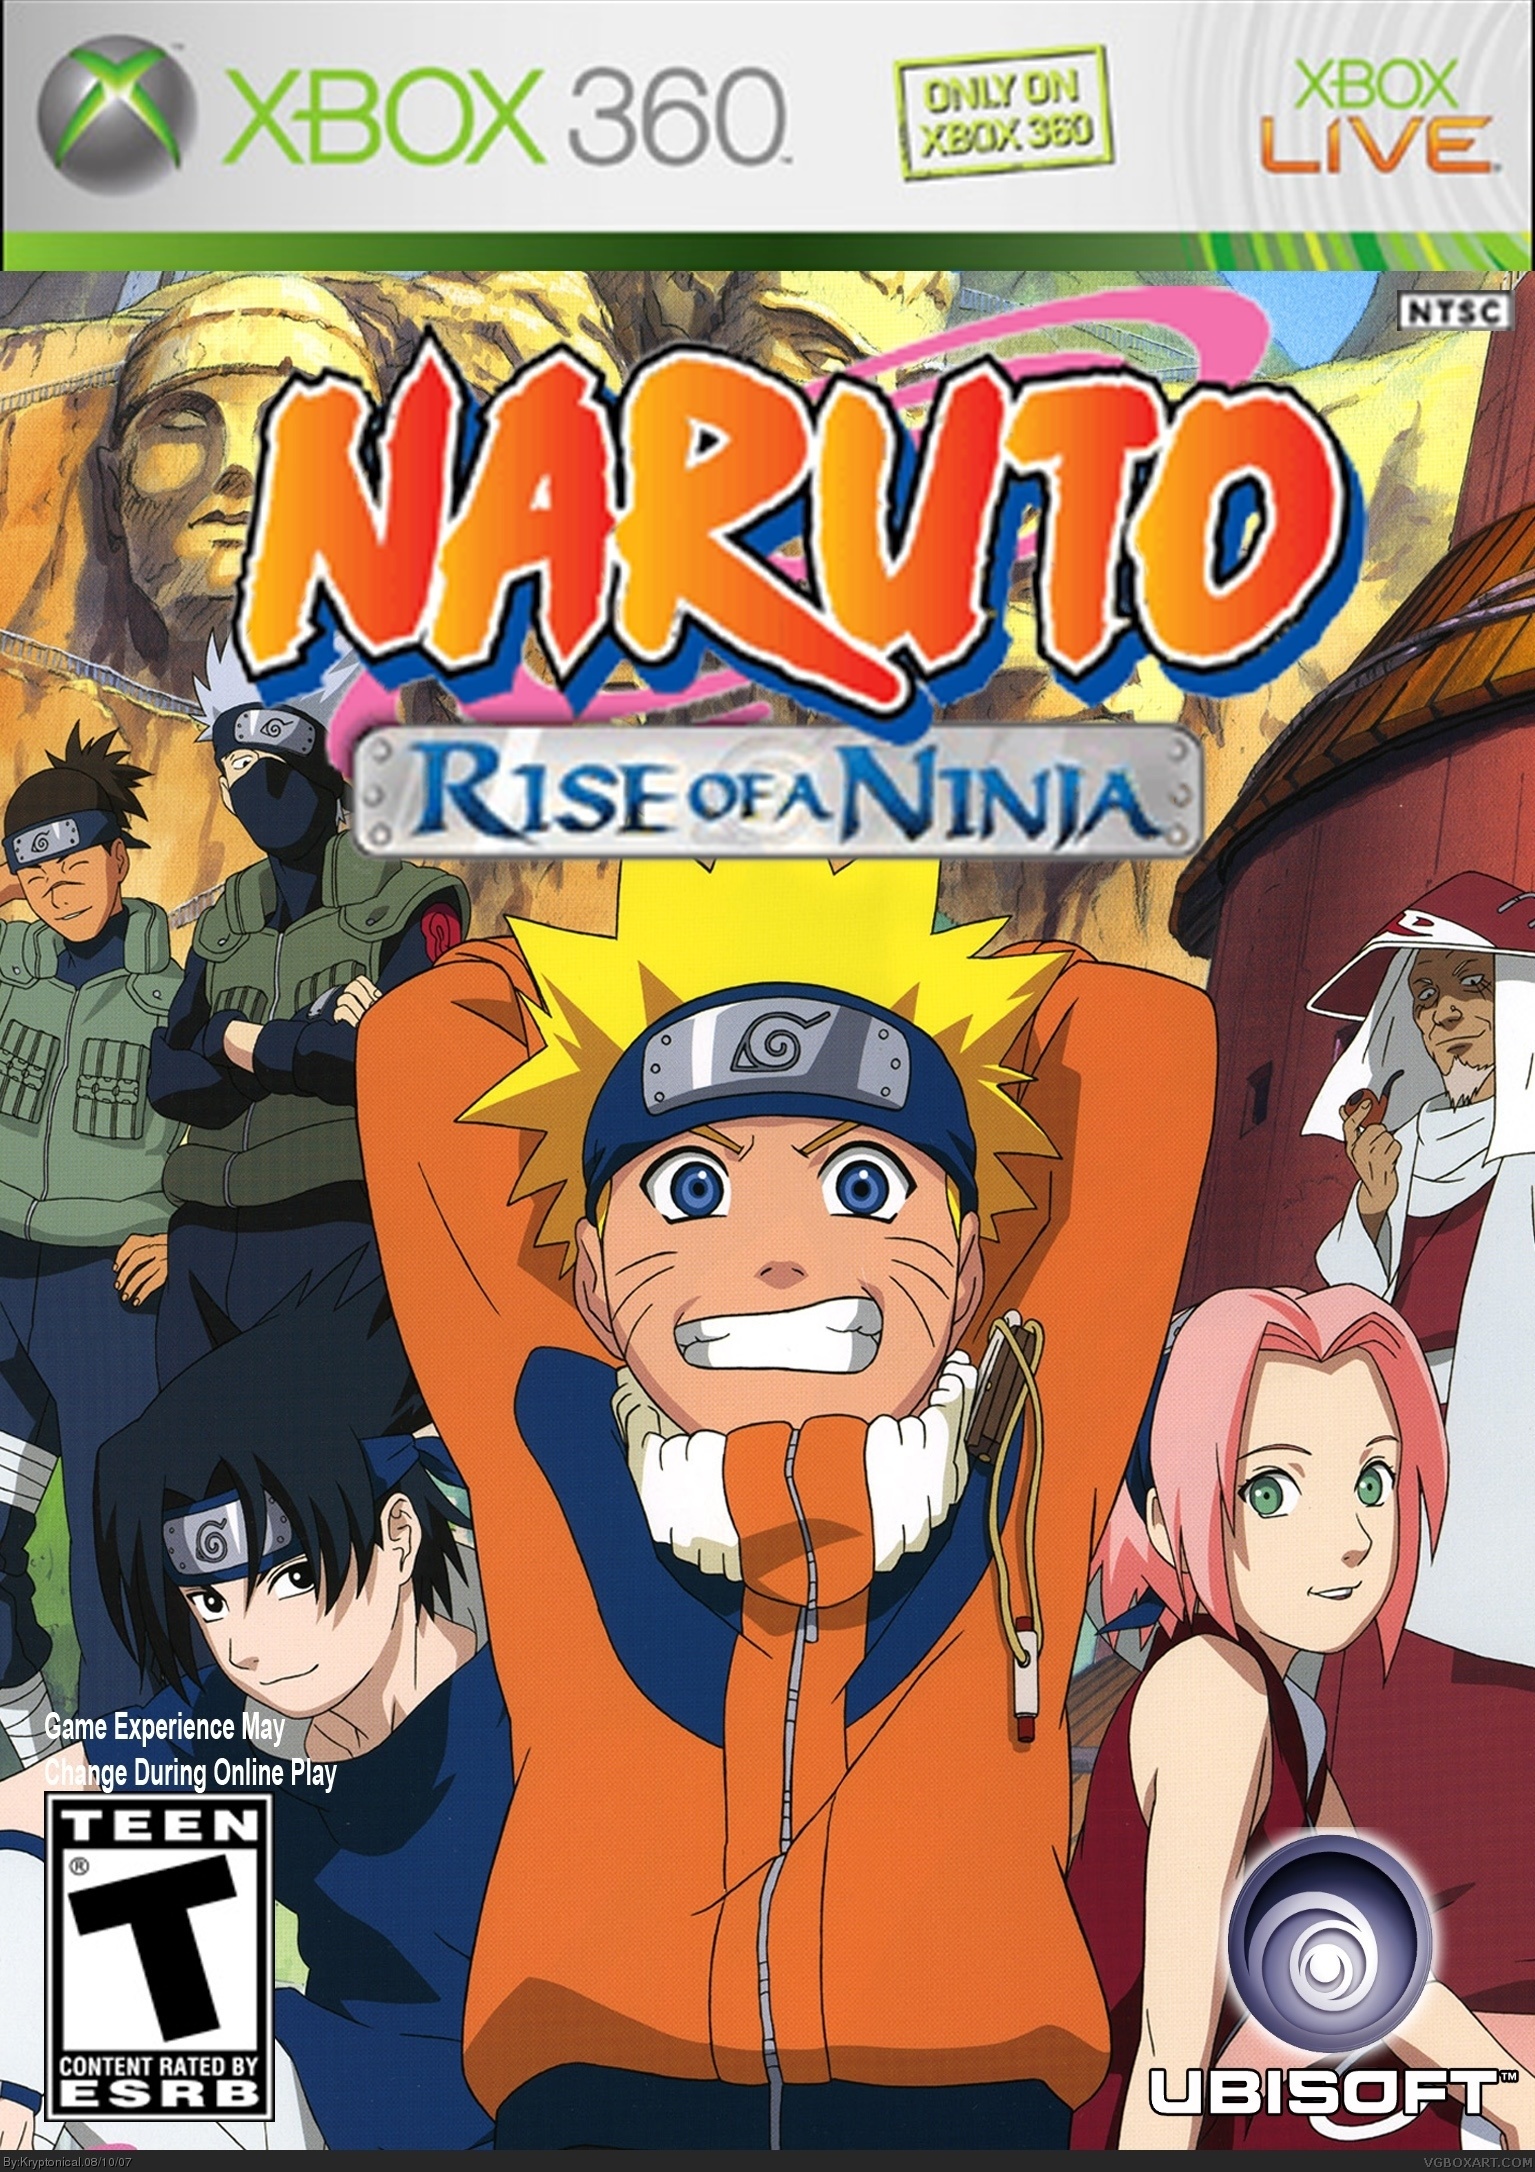 Naruto Rise of a Ninja box cover